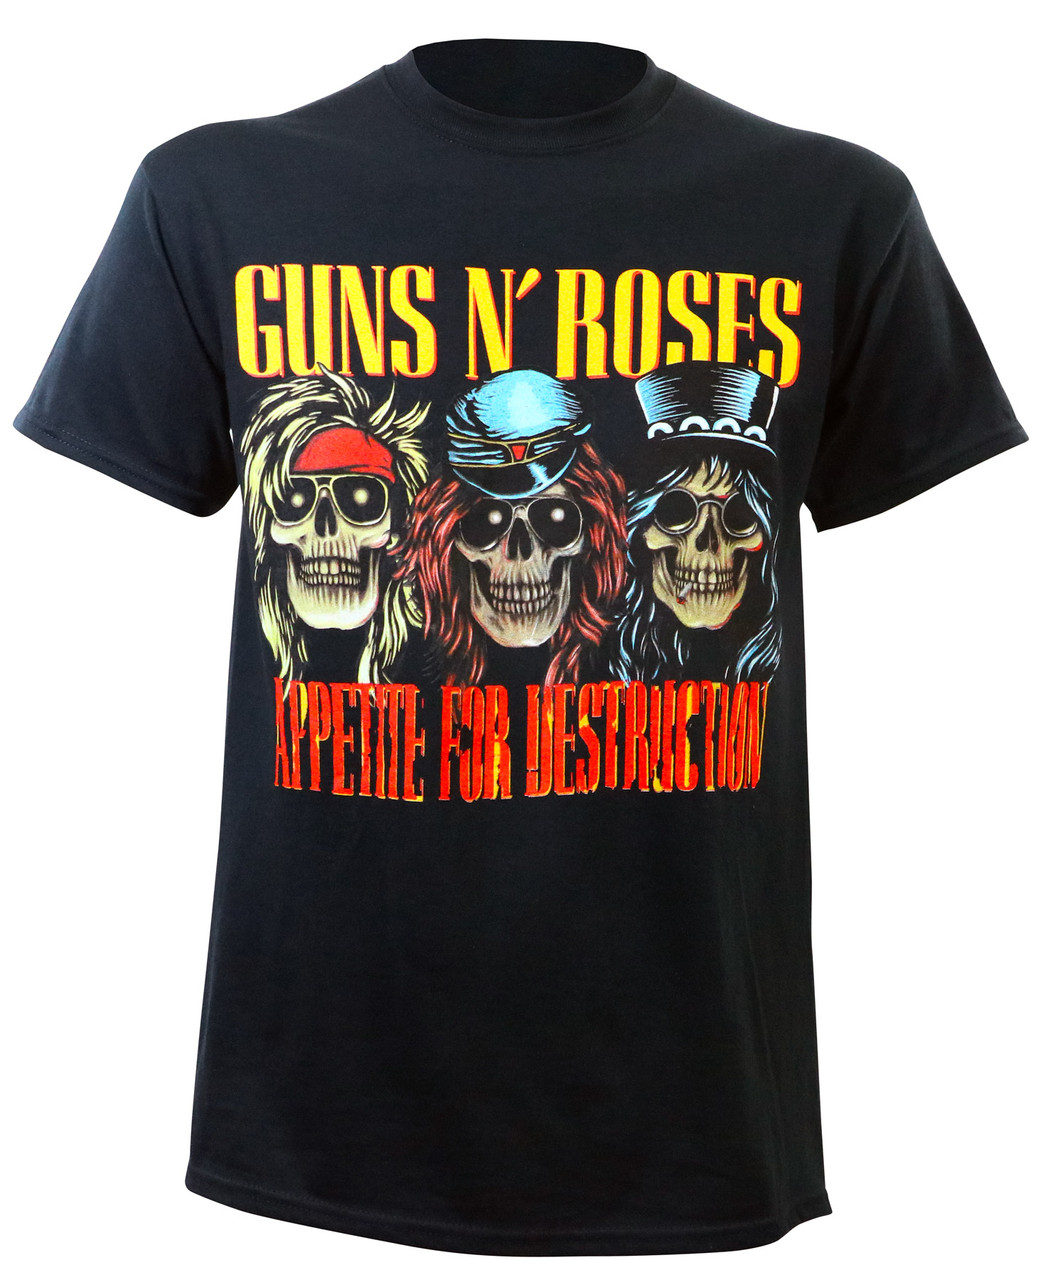 Guns N Roses Appetite for Destruction Skulls T-Shirt Black - Merch2rock ...